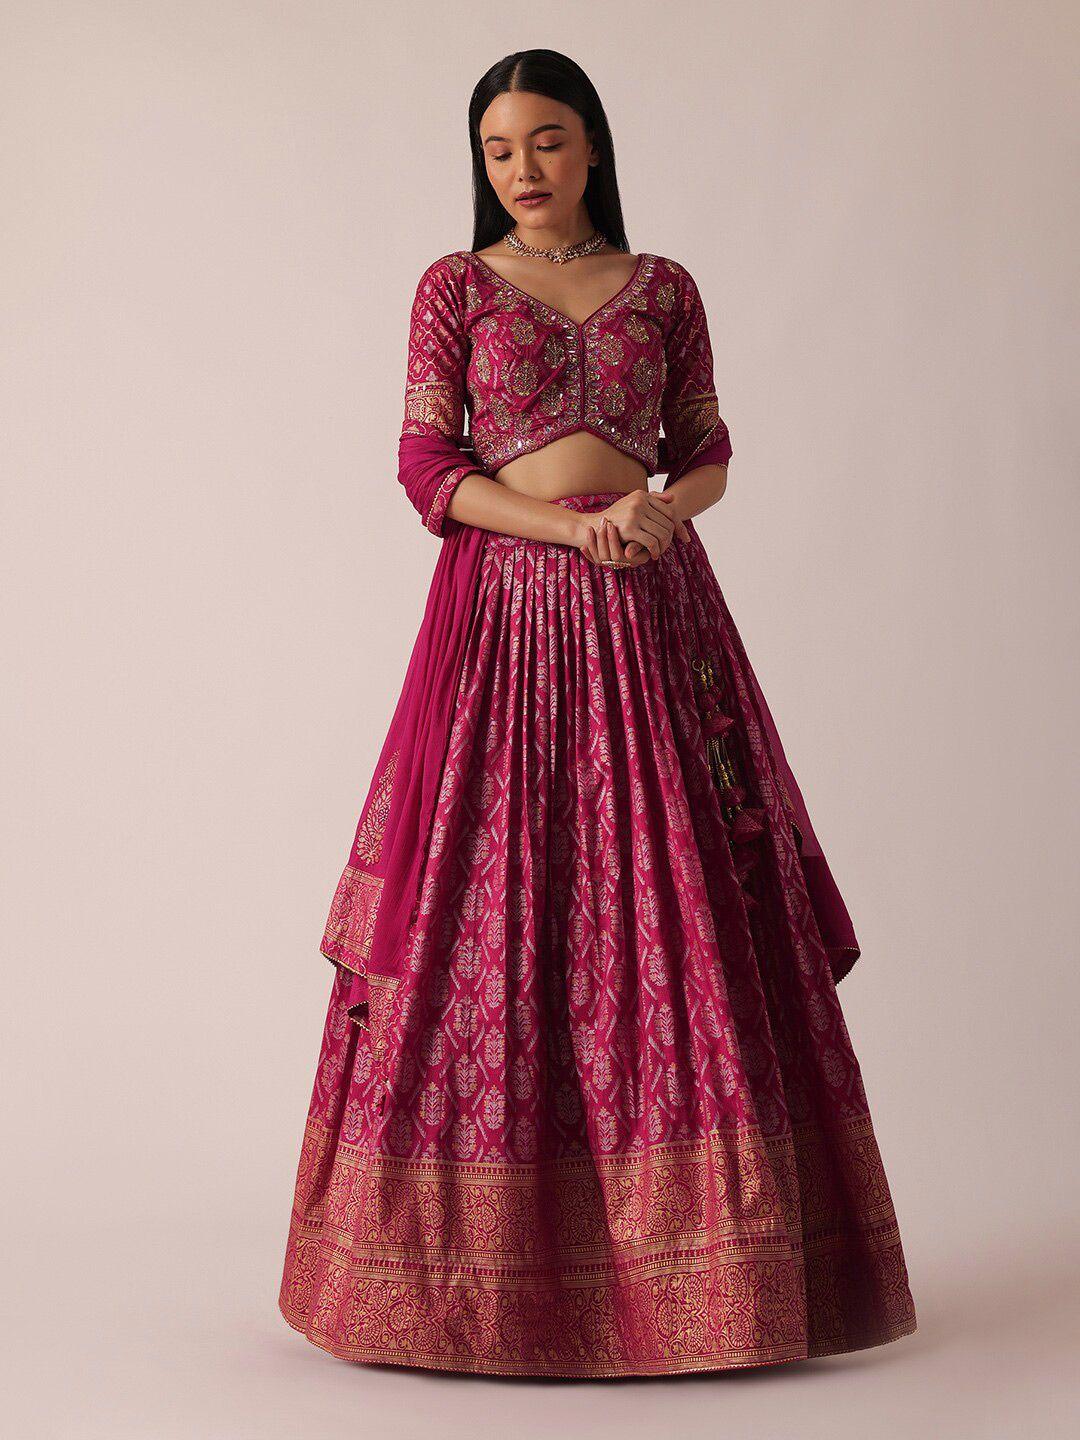 kalki fashion ethnic motifs woven design ready to wear lehenga & blouse with dupatta